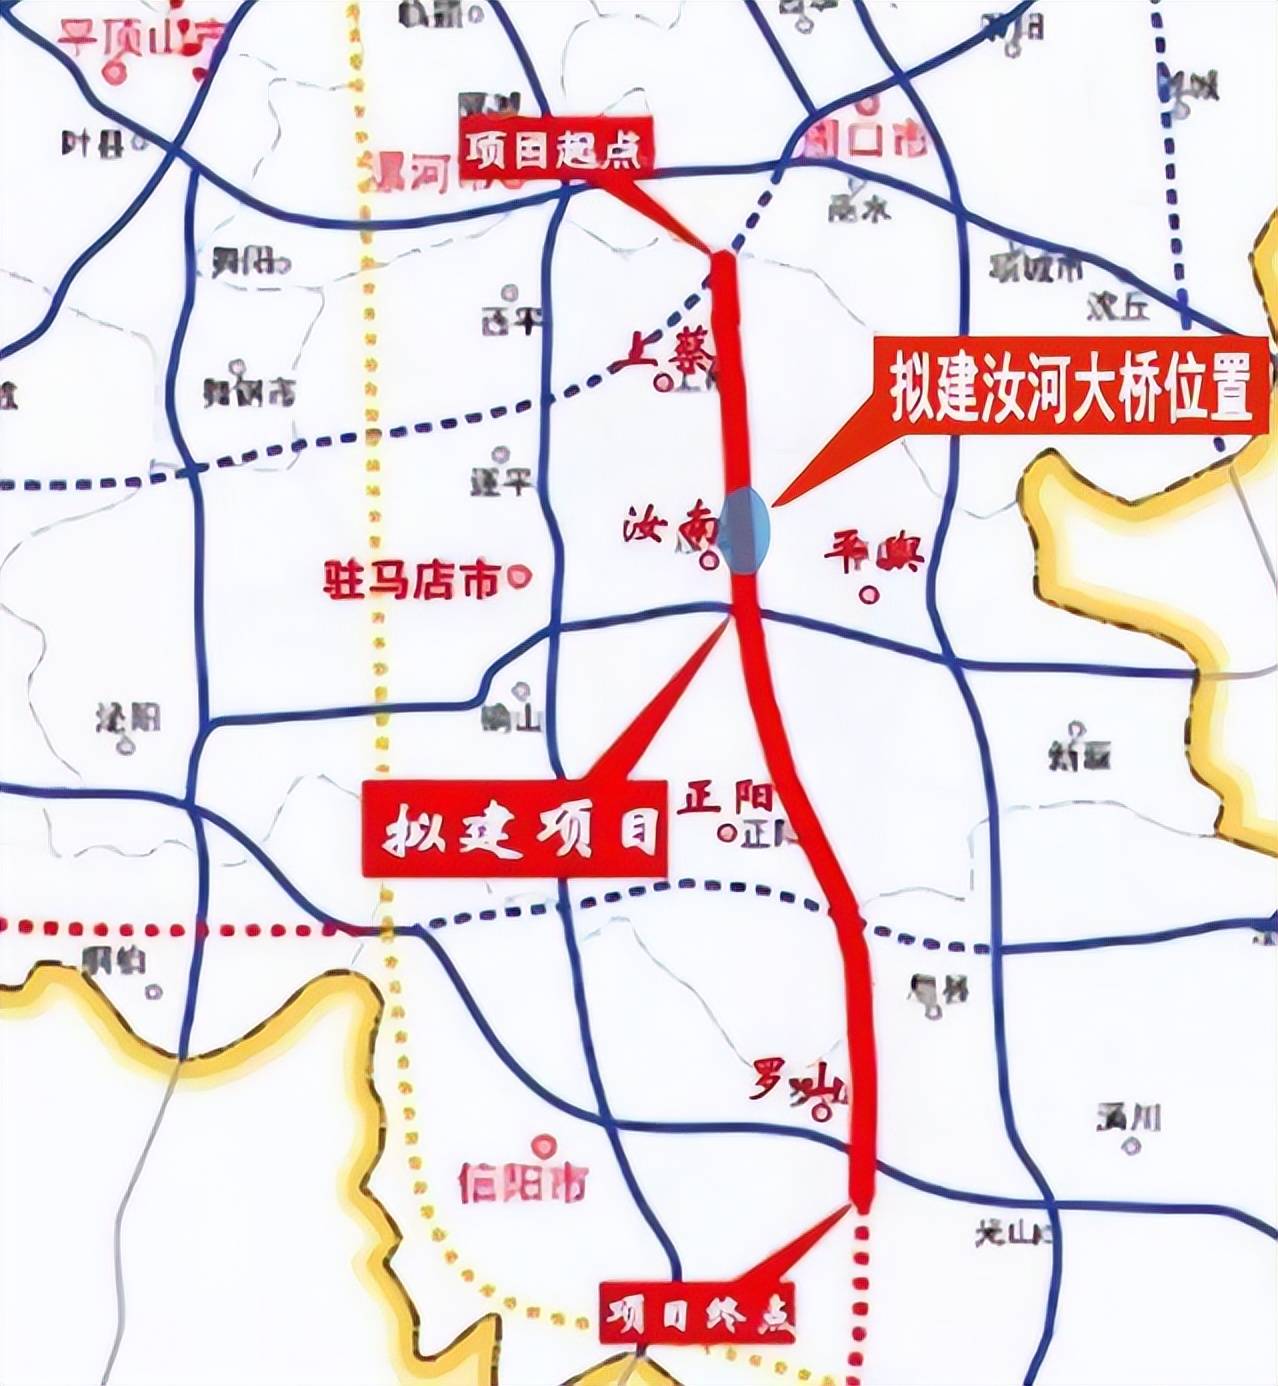 河南省安罗高速详细图图片